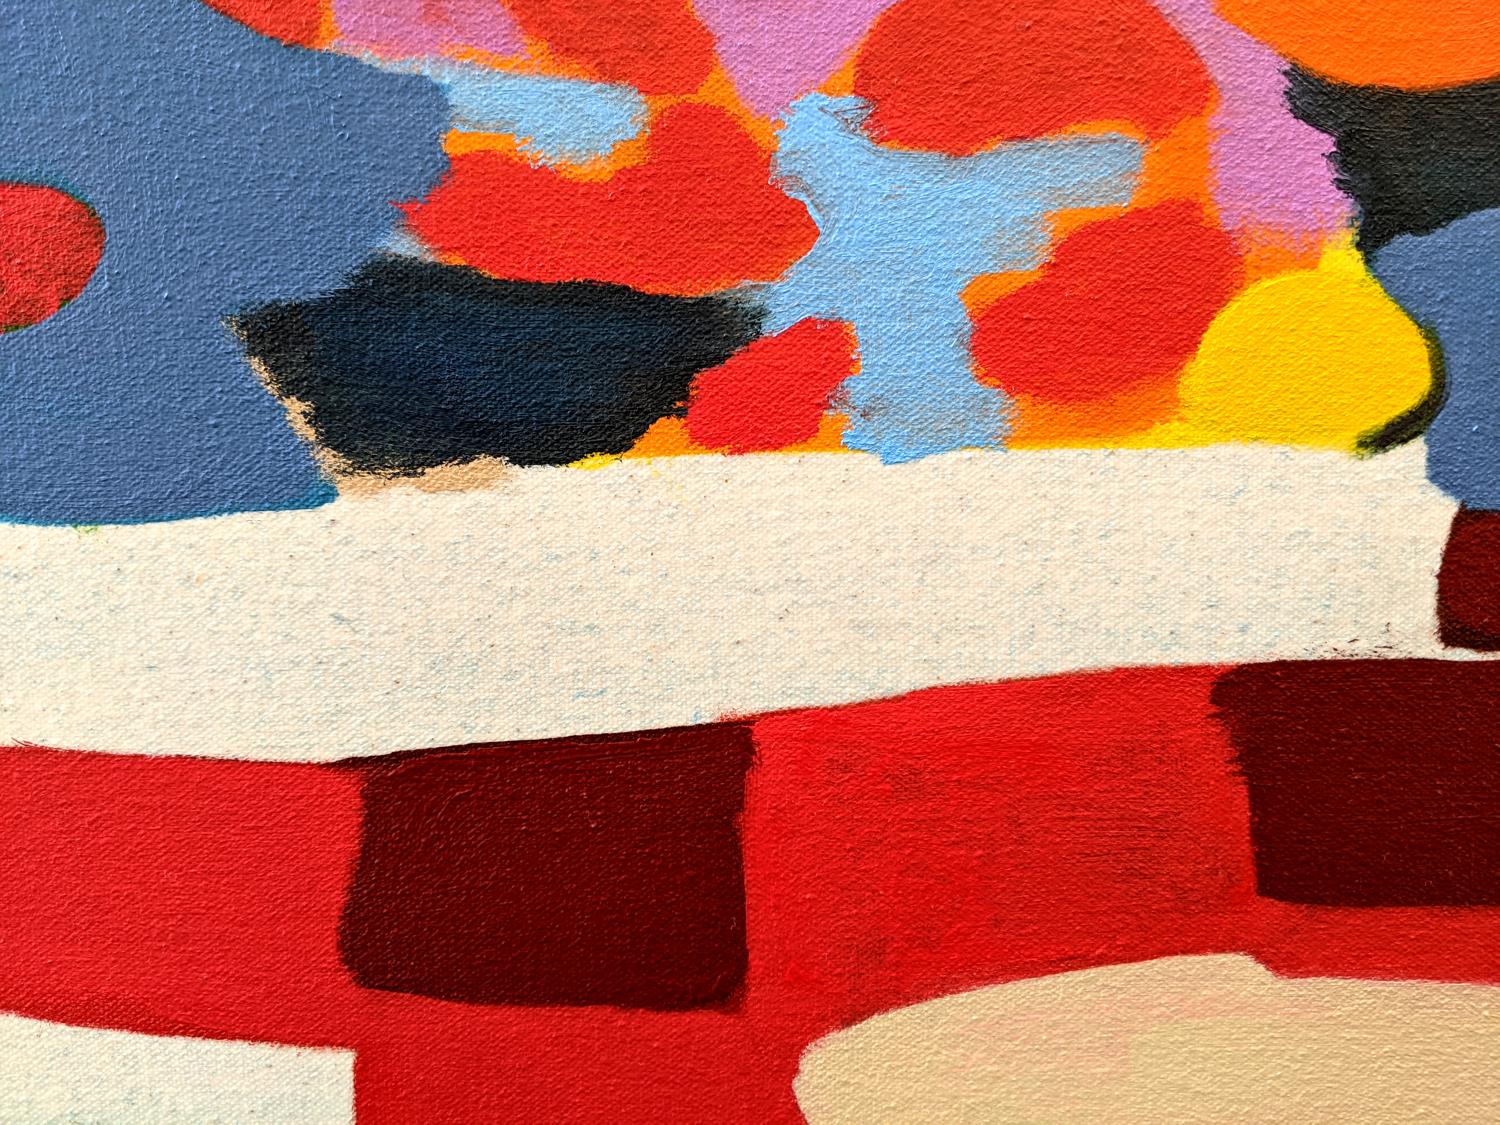 Stil Life (With Red Tablecloth 2) - coloré, abstrait, huile sur toile sur panneau - Contemporain Painting par Mel Davis